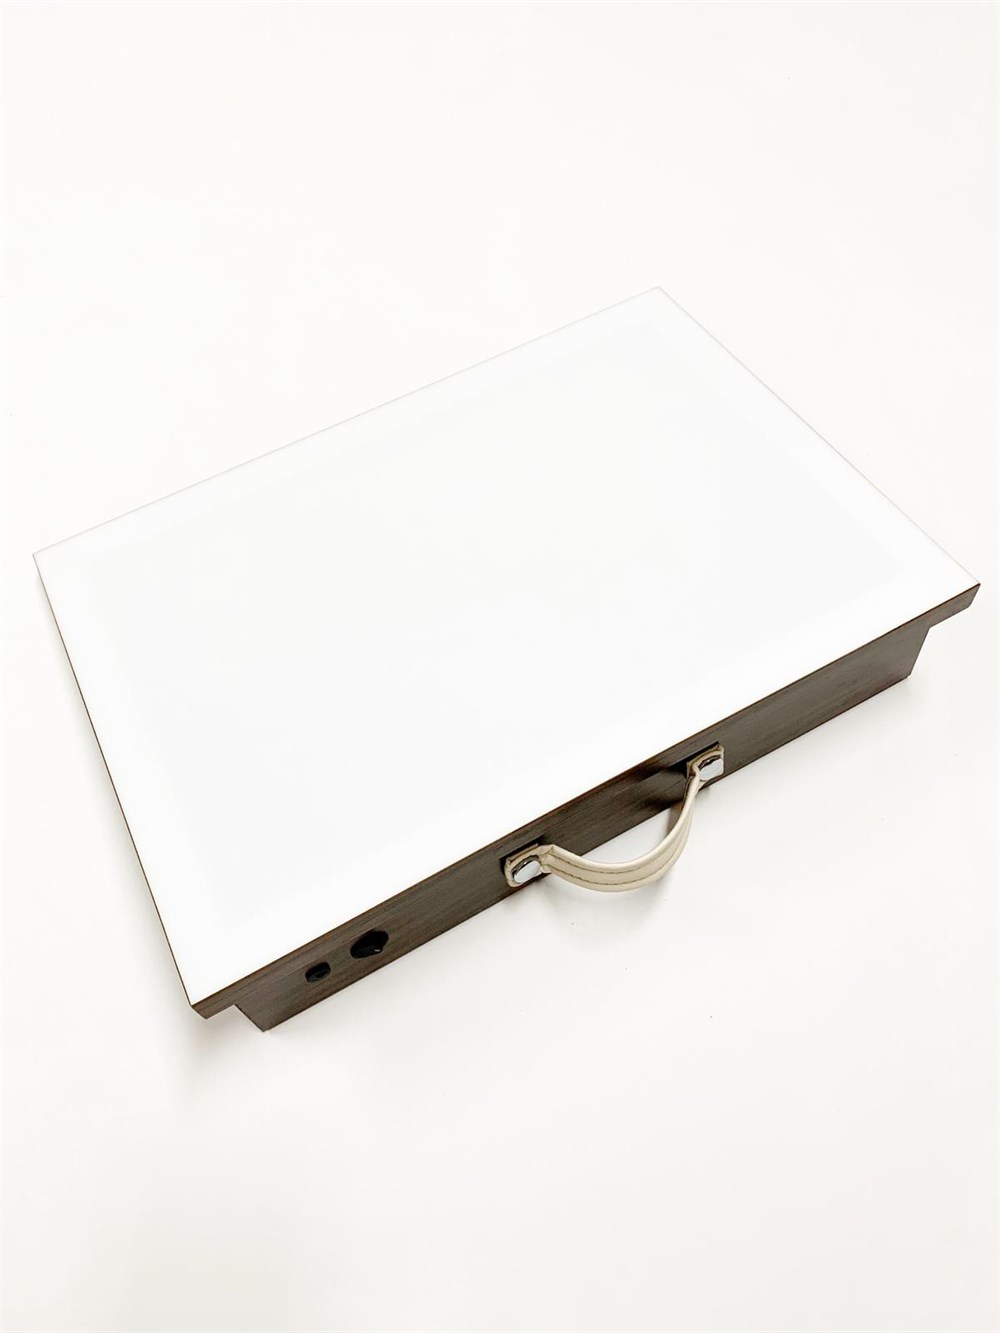 Tiryakiart 35x50 cm Led Işıklı Flexi Hat Yazı Masası Küçük Ceviz